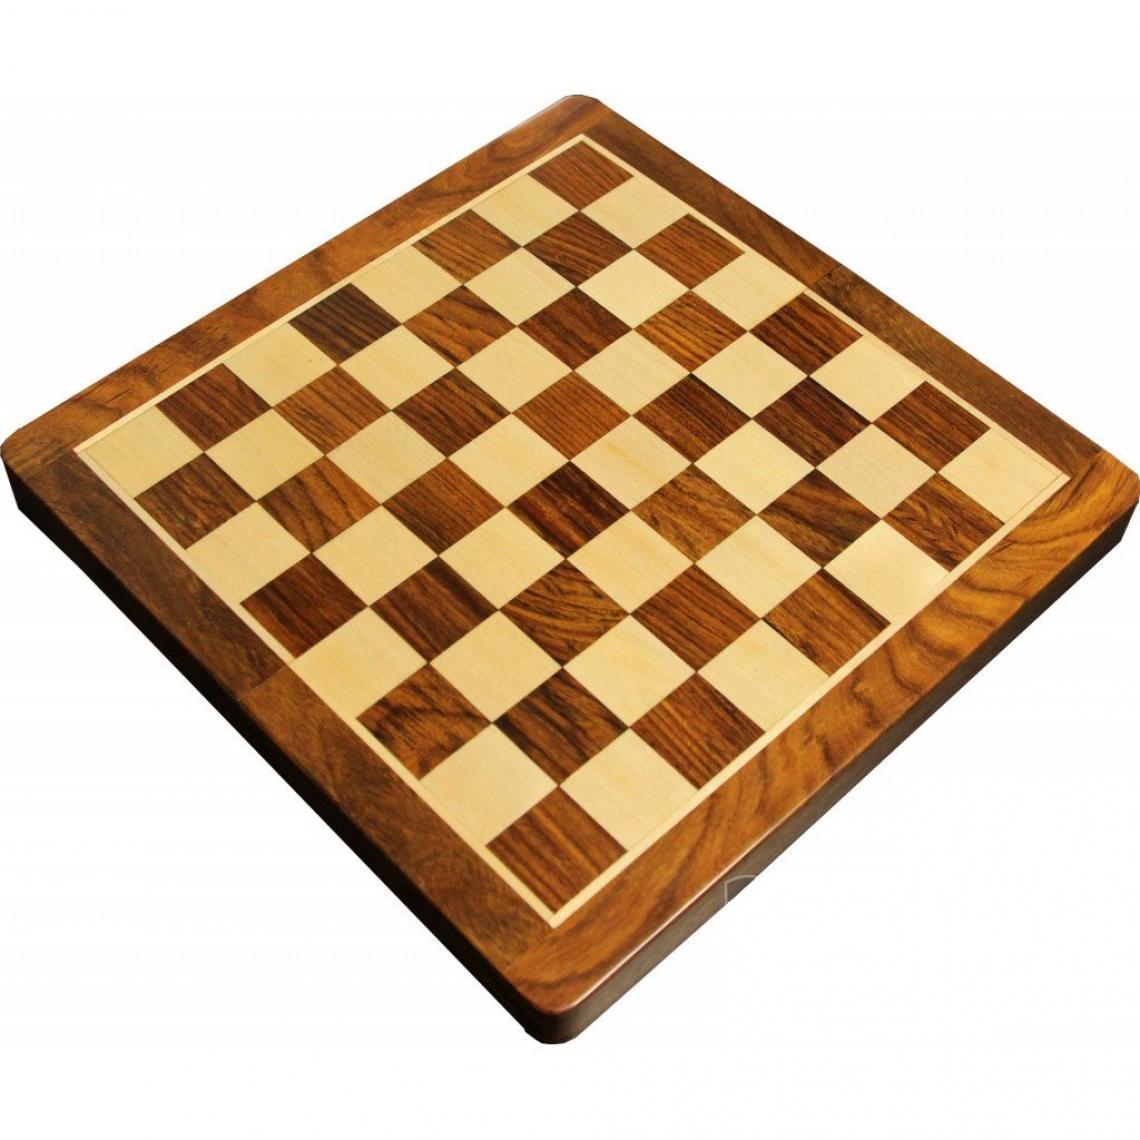 marque generique - Jeu d'échecs pliant magnétique marqueté (30 cm) - Coffret Bois Patiné - Les grands classiques